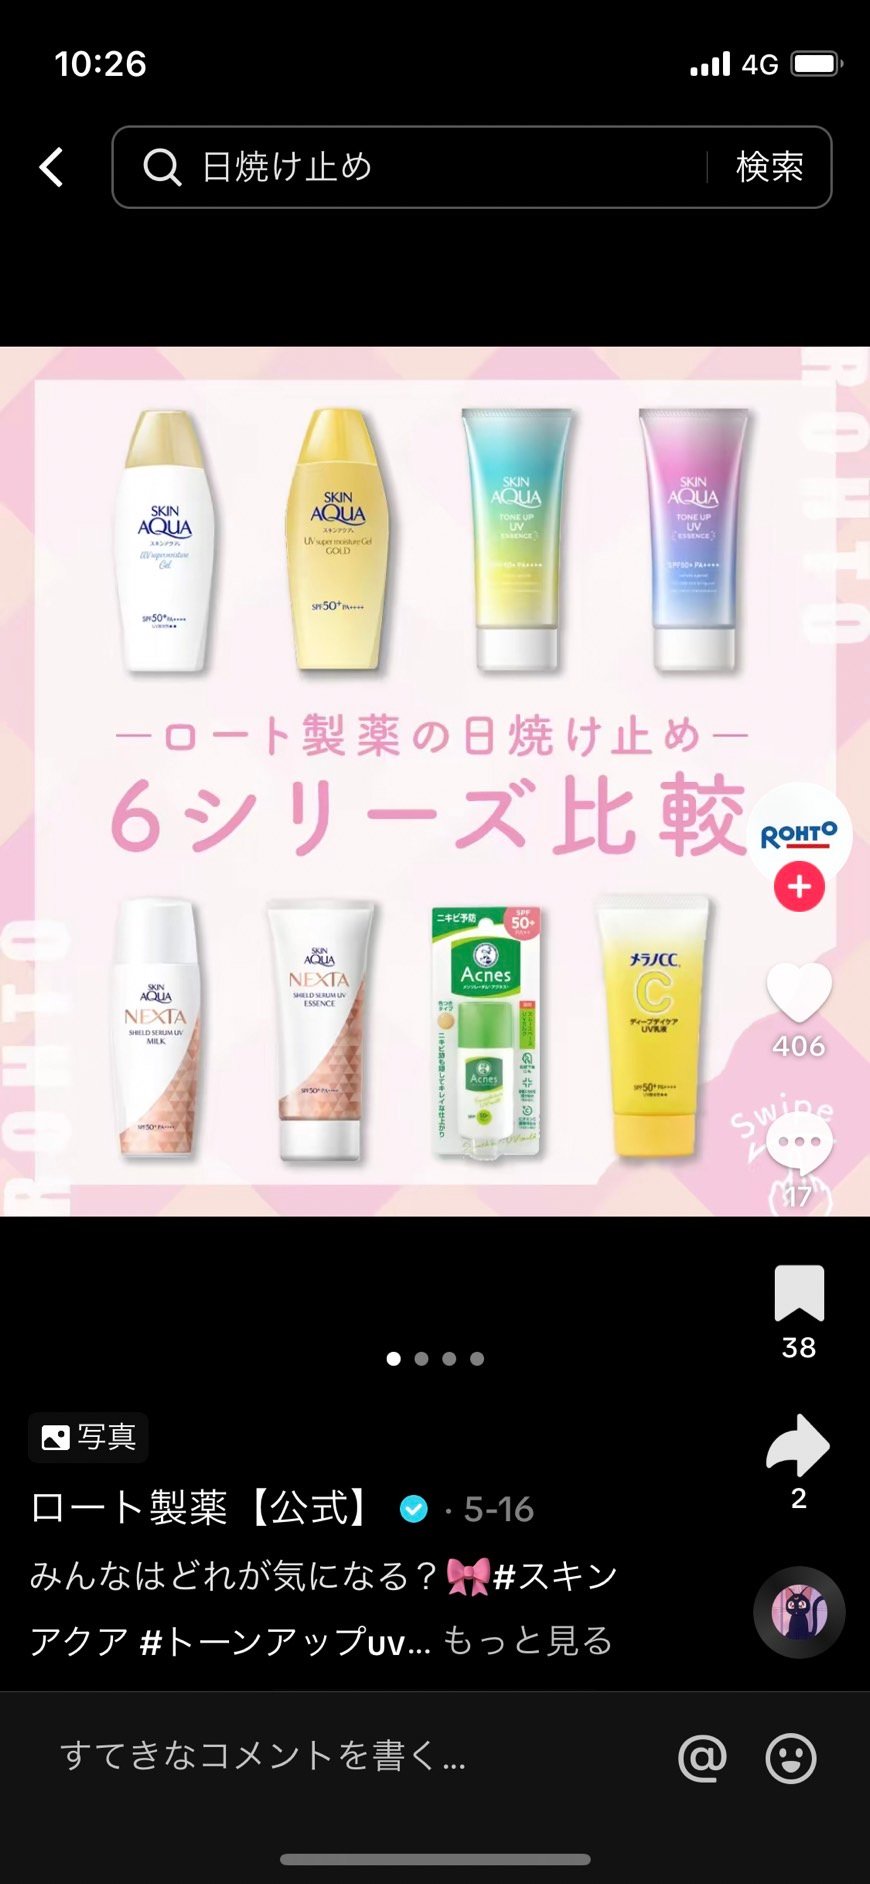 TikTokの運用について福岡の広告代理店が解説イメージ35